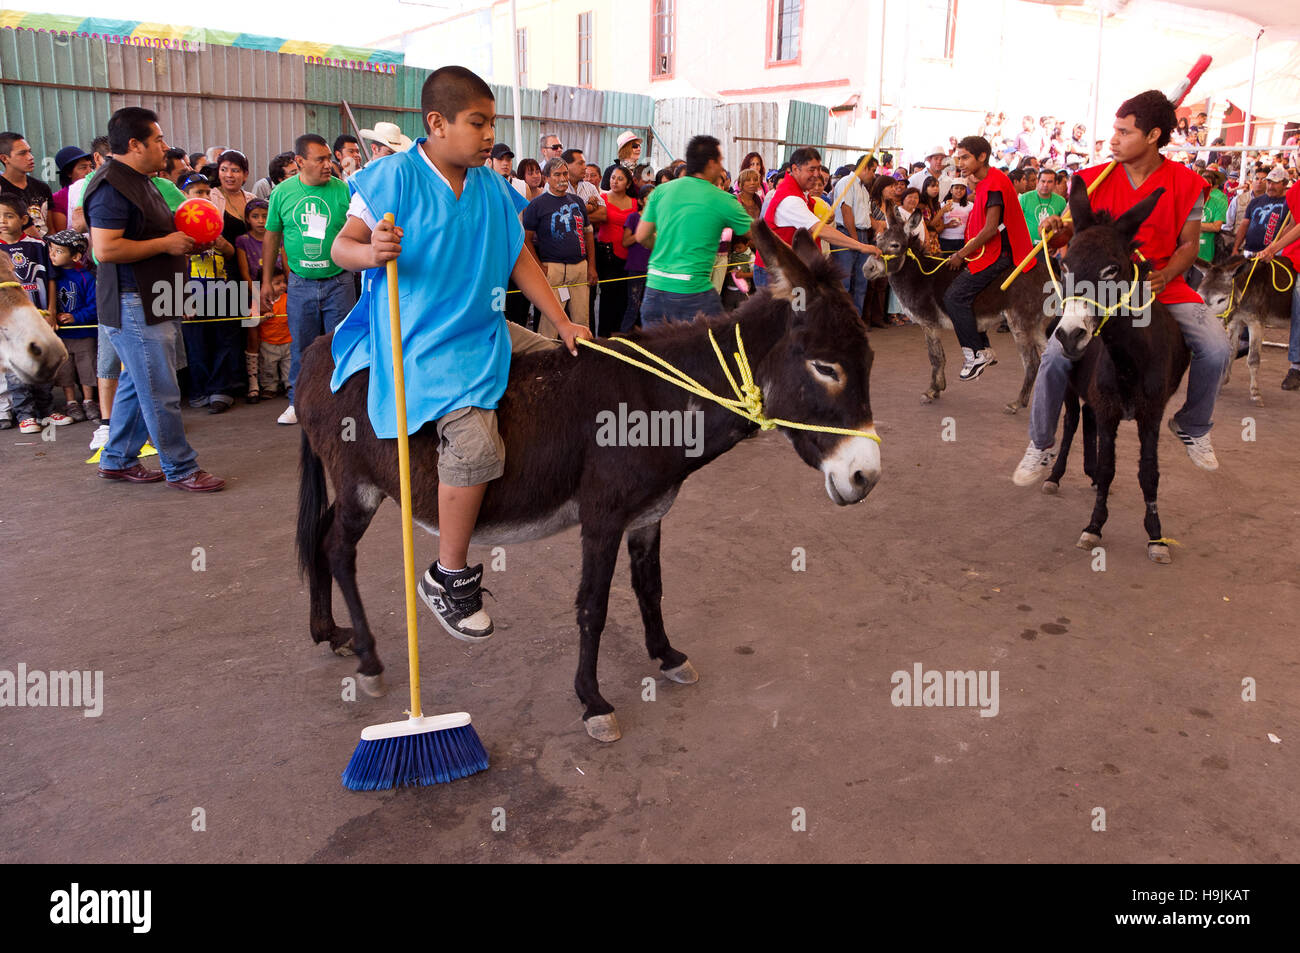 Polo game riding a donkey during the Donkey fair (Feria del burro) in Otumba, Mexico Stock Photo